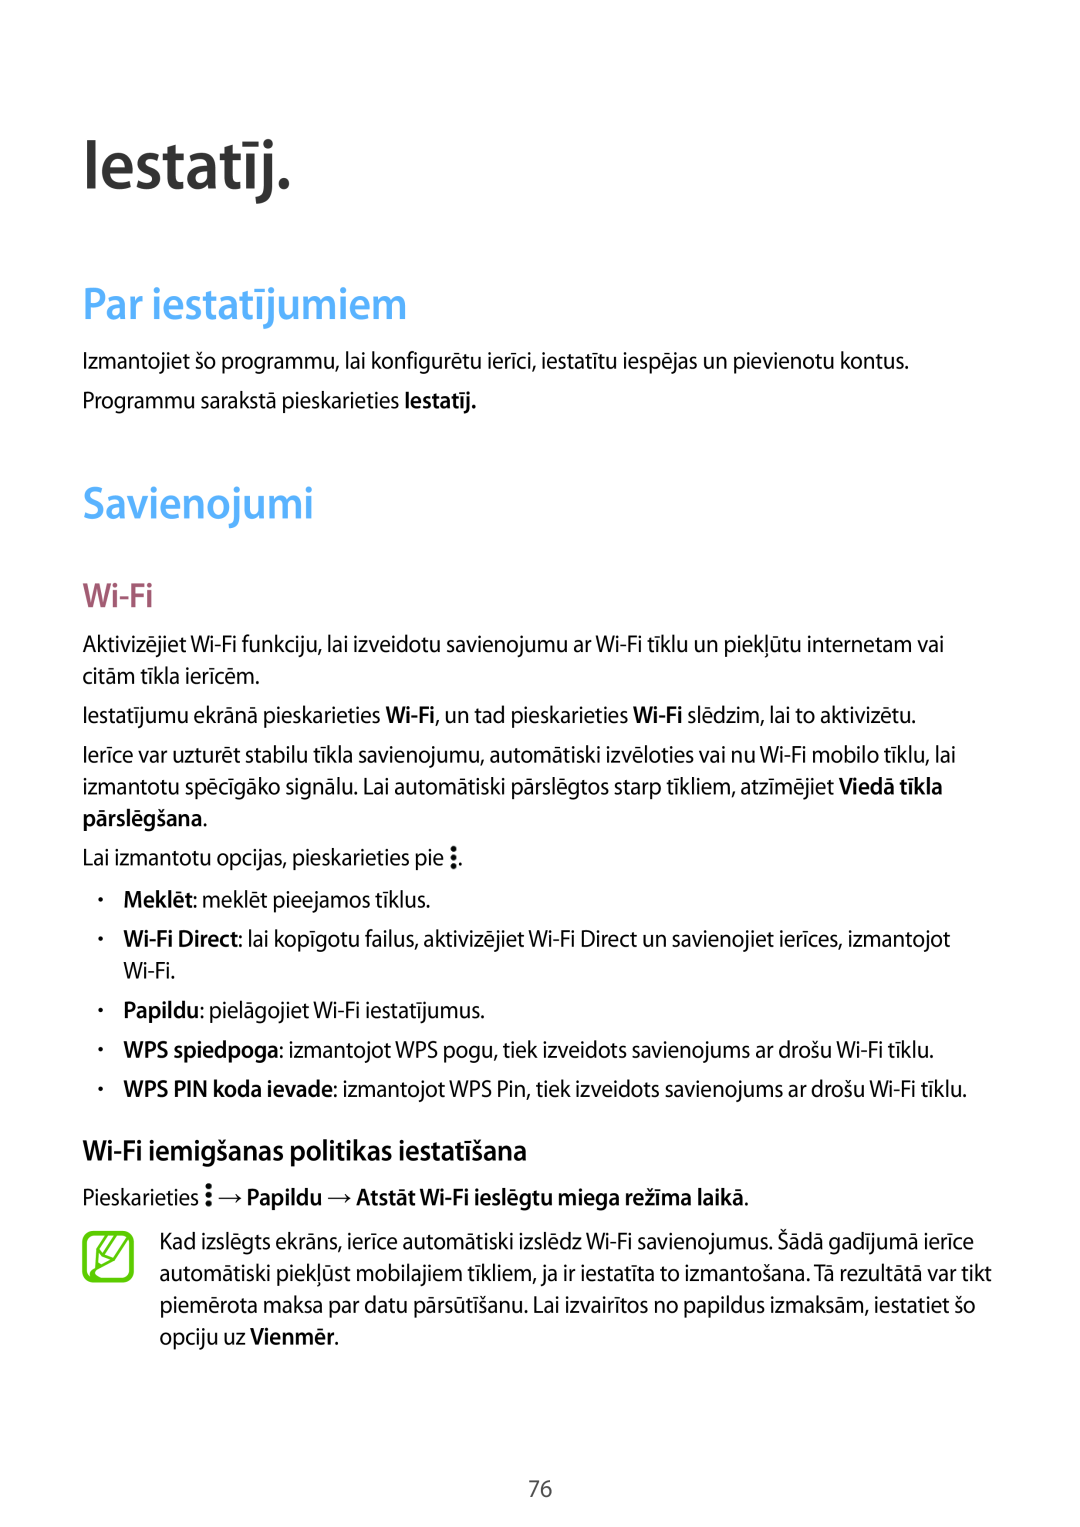 Samsung SM-G531FZAASEB manual Iestatīj, Par iestatījumiem, Savienojumi, Wi-Fi iemigšanas politikas iestatīšana 